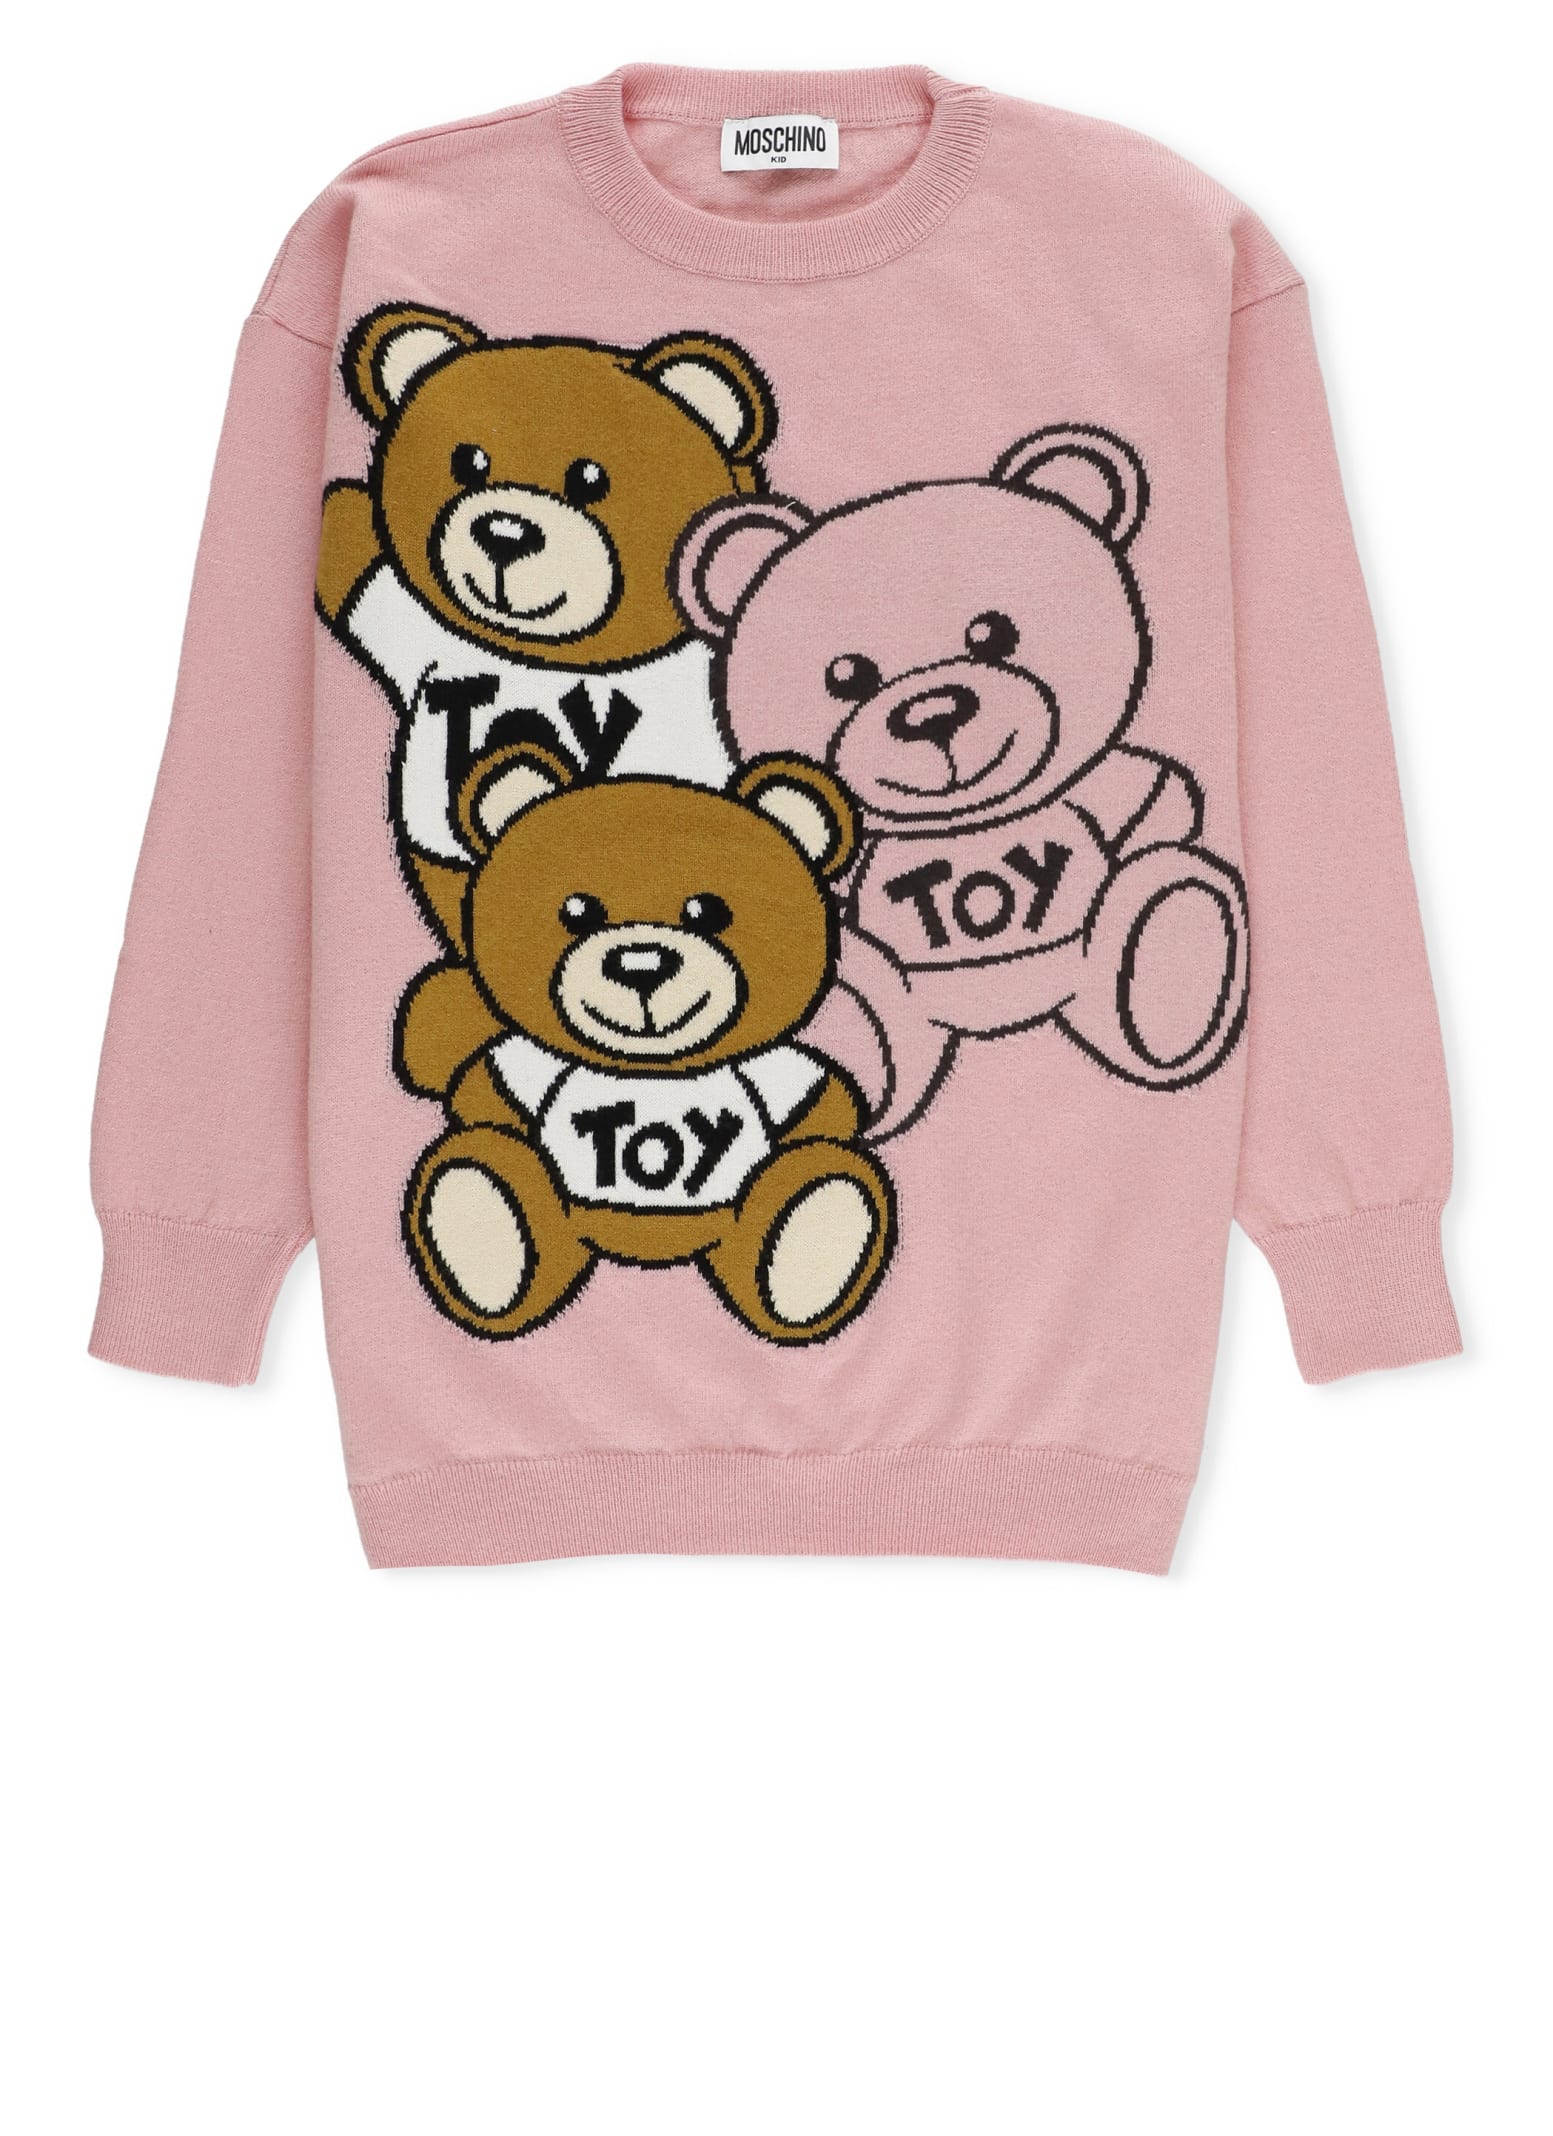 Moschino Teddy Friends Sweater